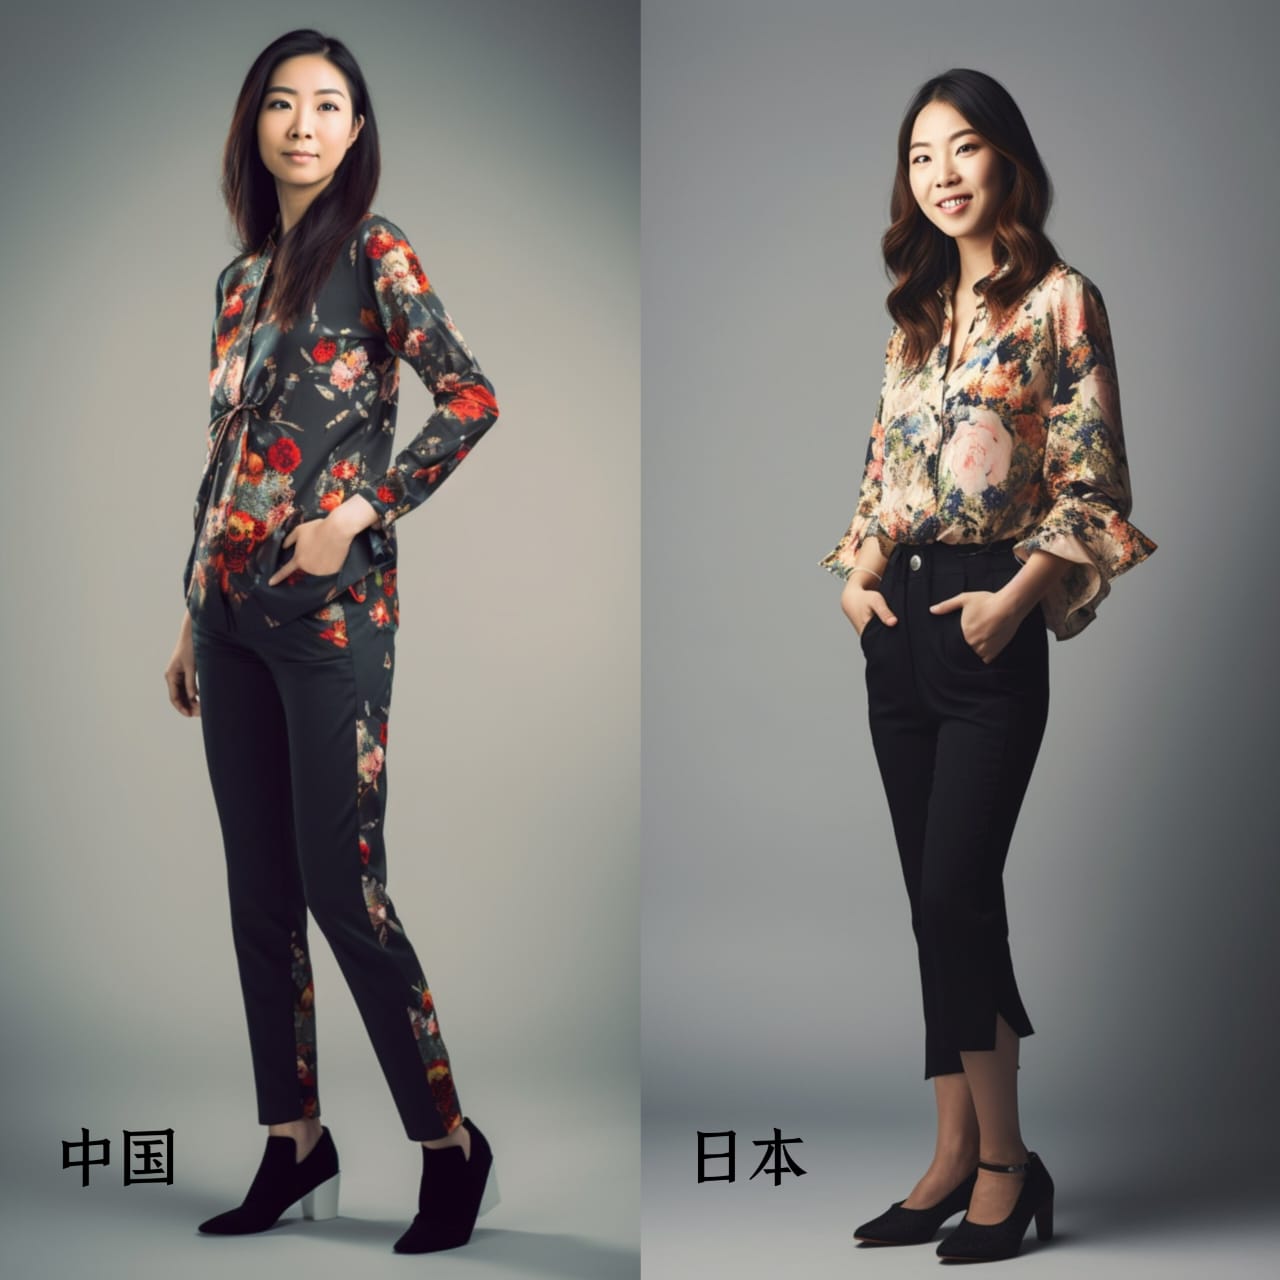 中国、日本 AI 美女